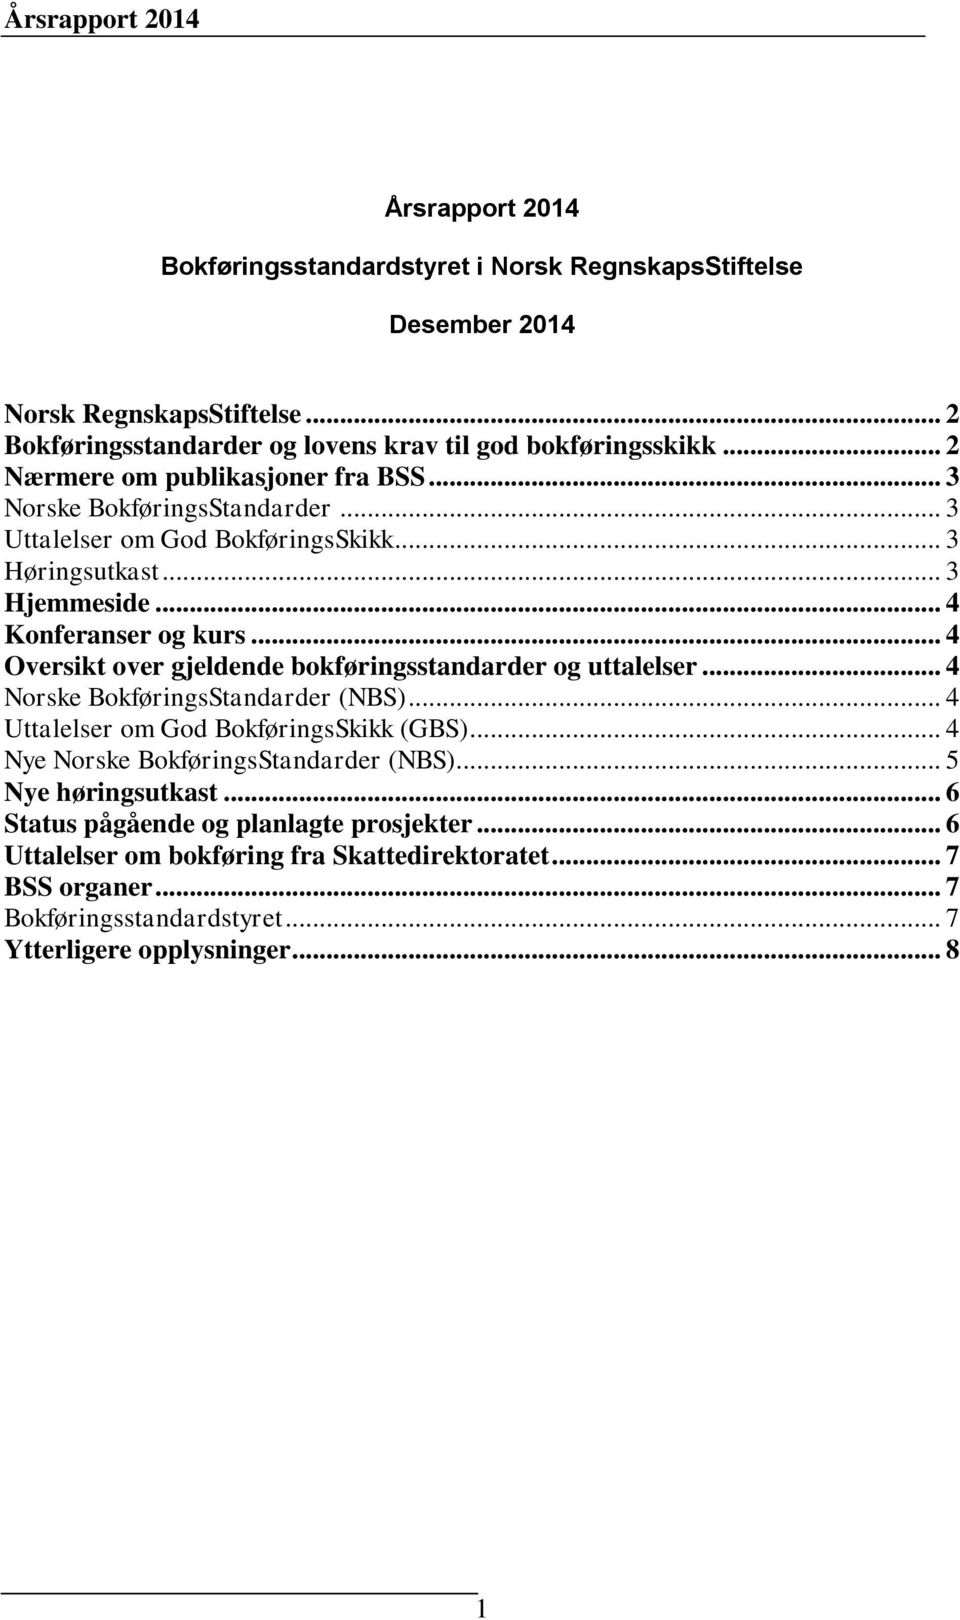 .. 4 Oversikt over gjeldende bokføringsstandarder og uttalelser... 4 Norske BokføringsStandarder (NBS)... 4 Uttalelser om God BokføringsSkikk (GBS).